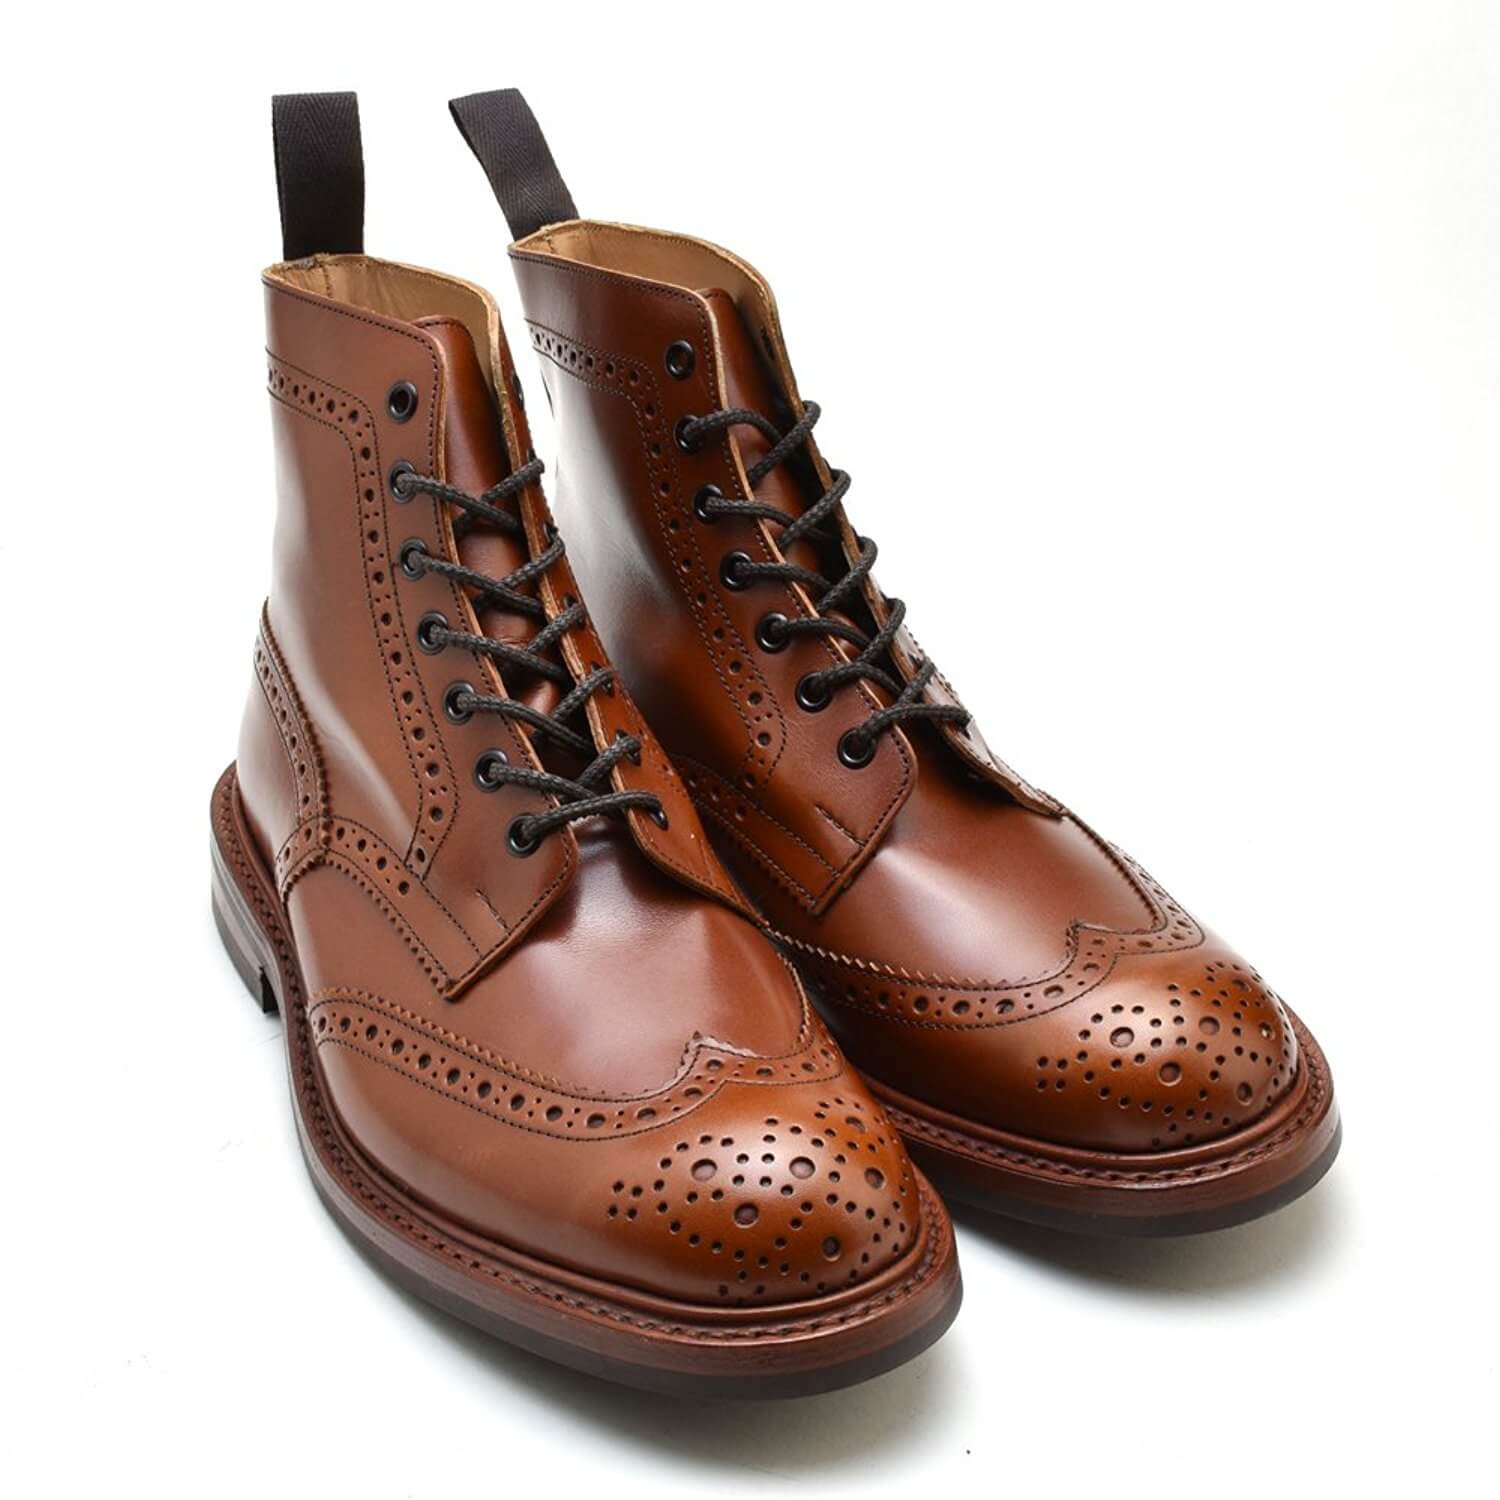 最も装飾的な紳士靴「ウィングチップ」の歴史や定番モデルを紹介